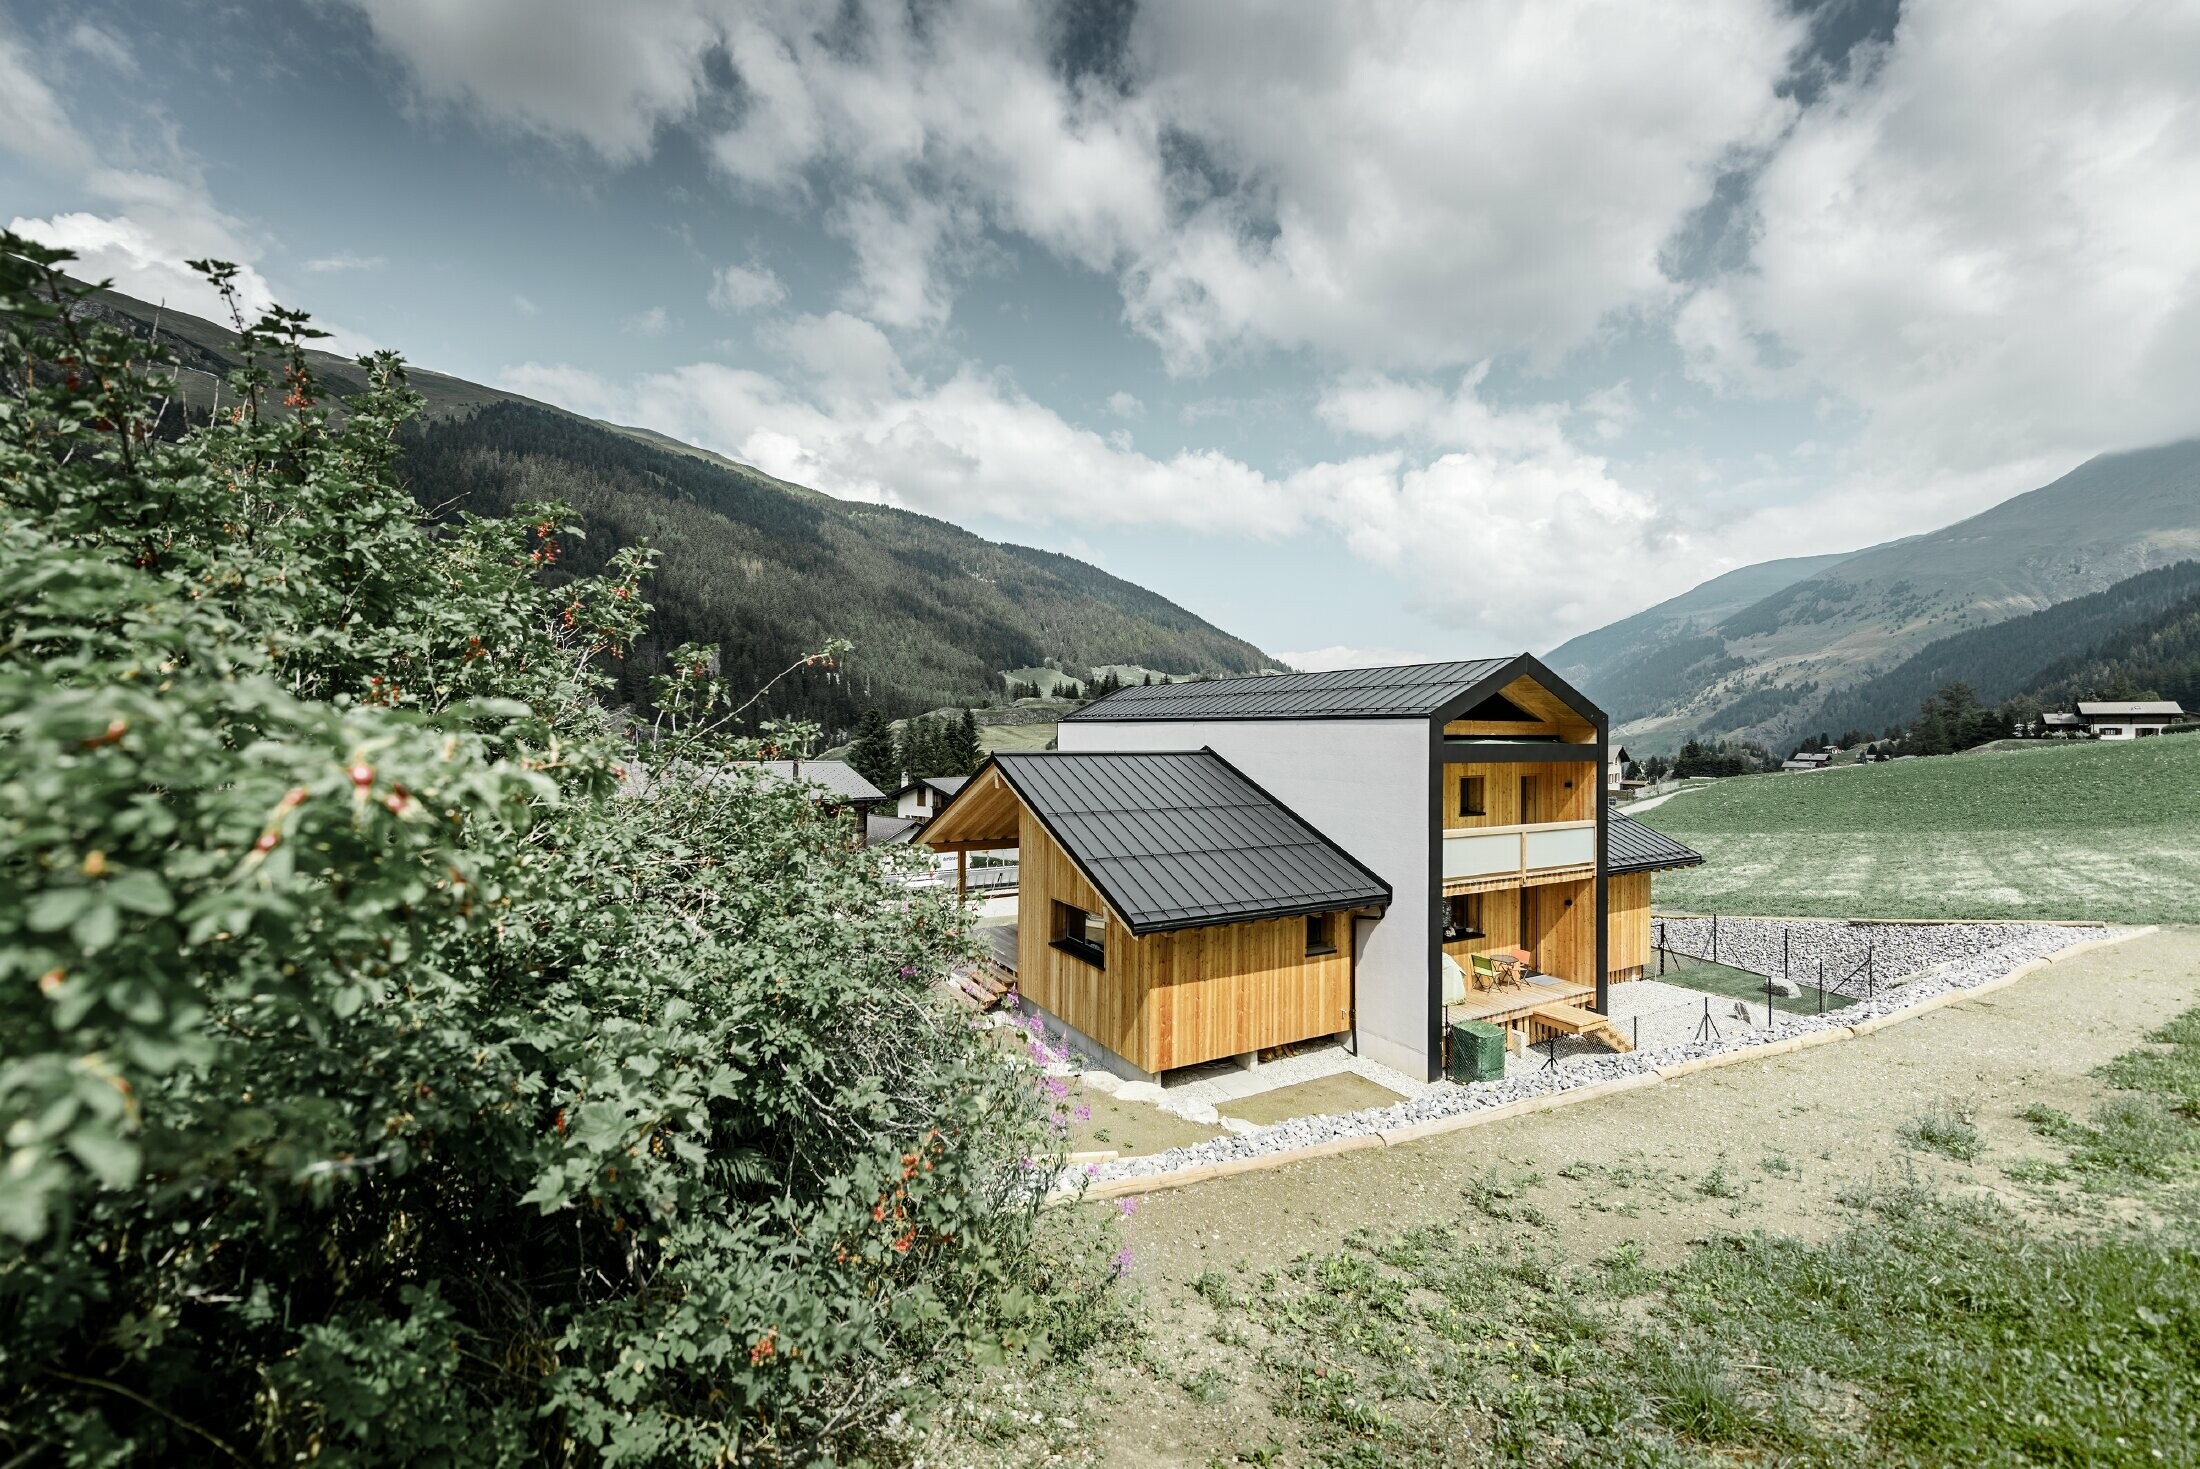 Cette maison individuelle donne l’impression que 2 maisons sont superposées selon un angle de 90°. Le toit est recouvert de Prefalz couleur noir et la façade est partiellement habillée de bois.